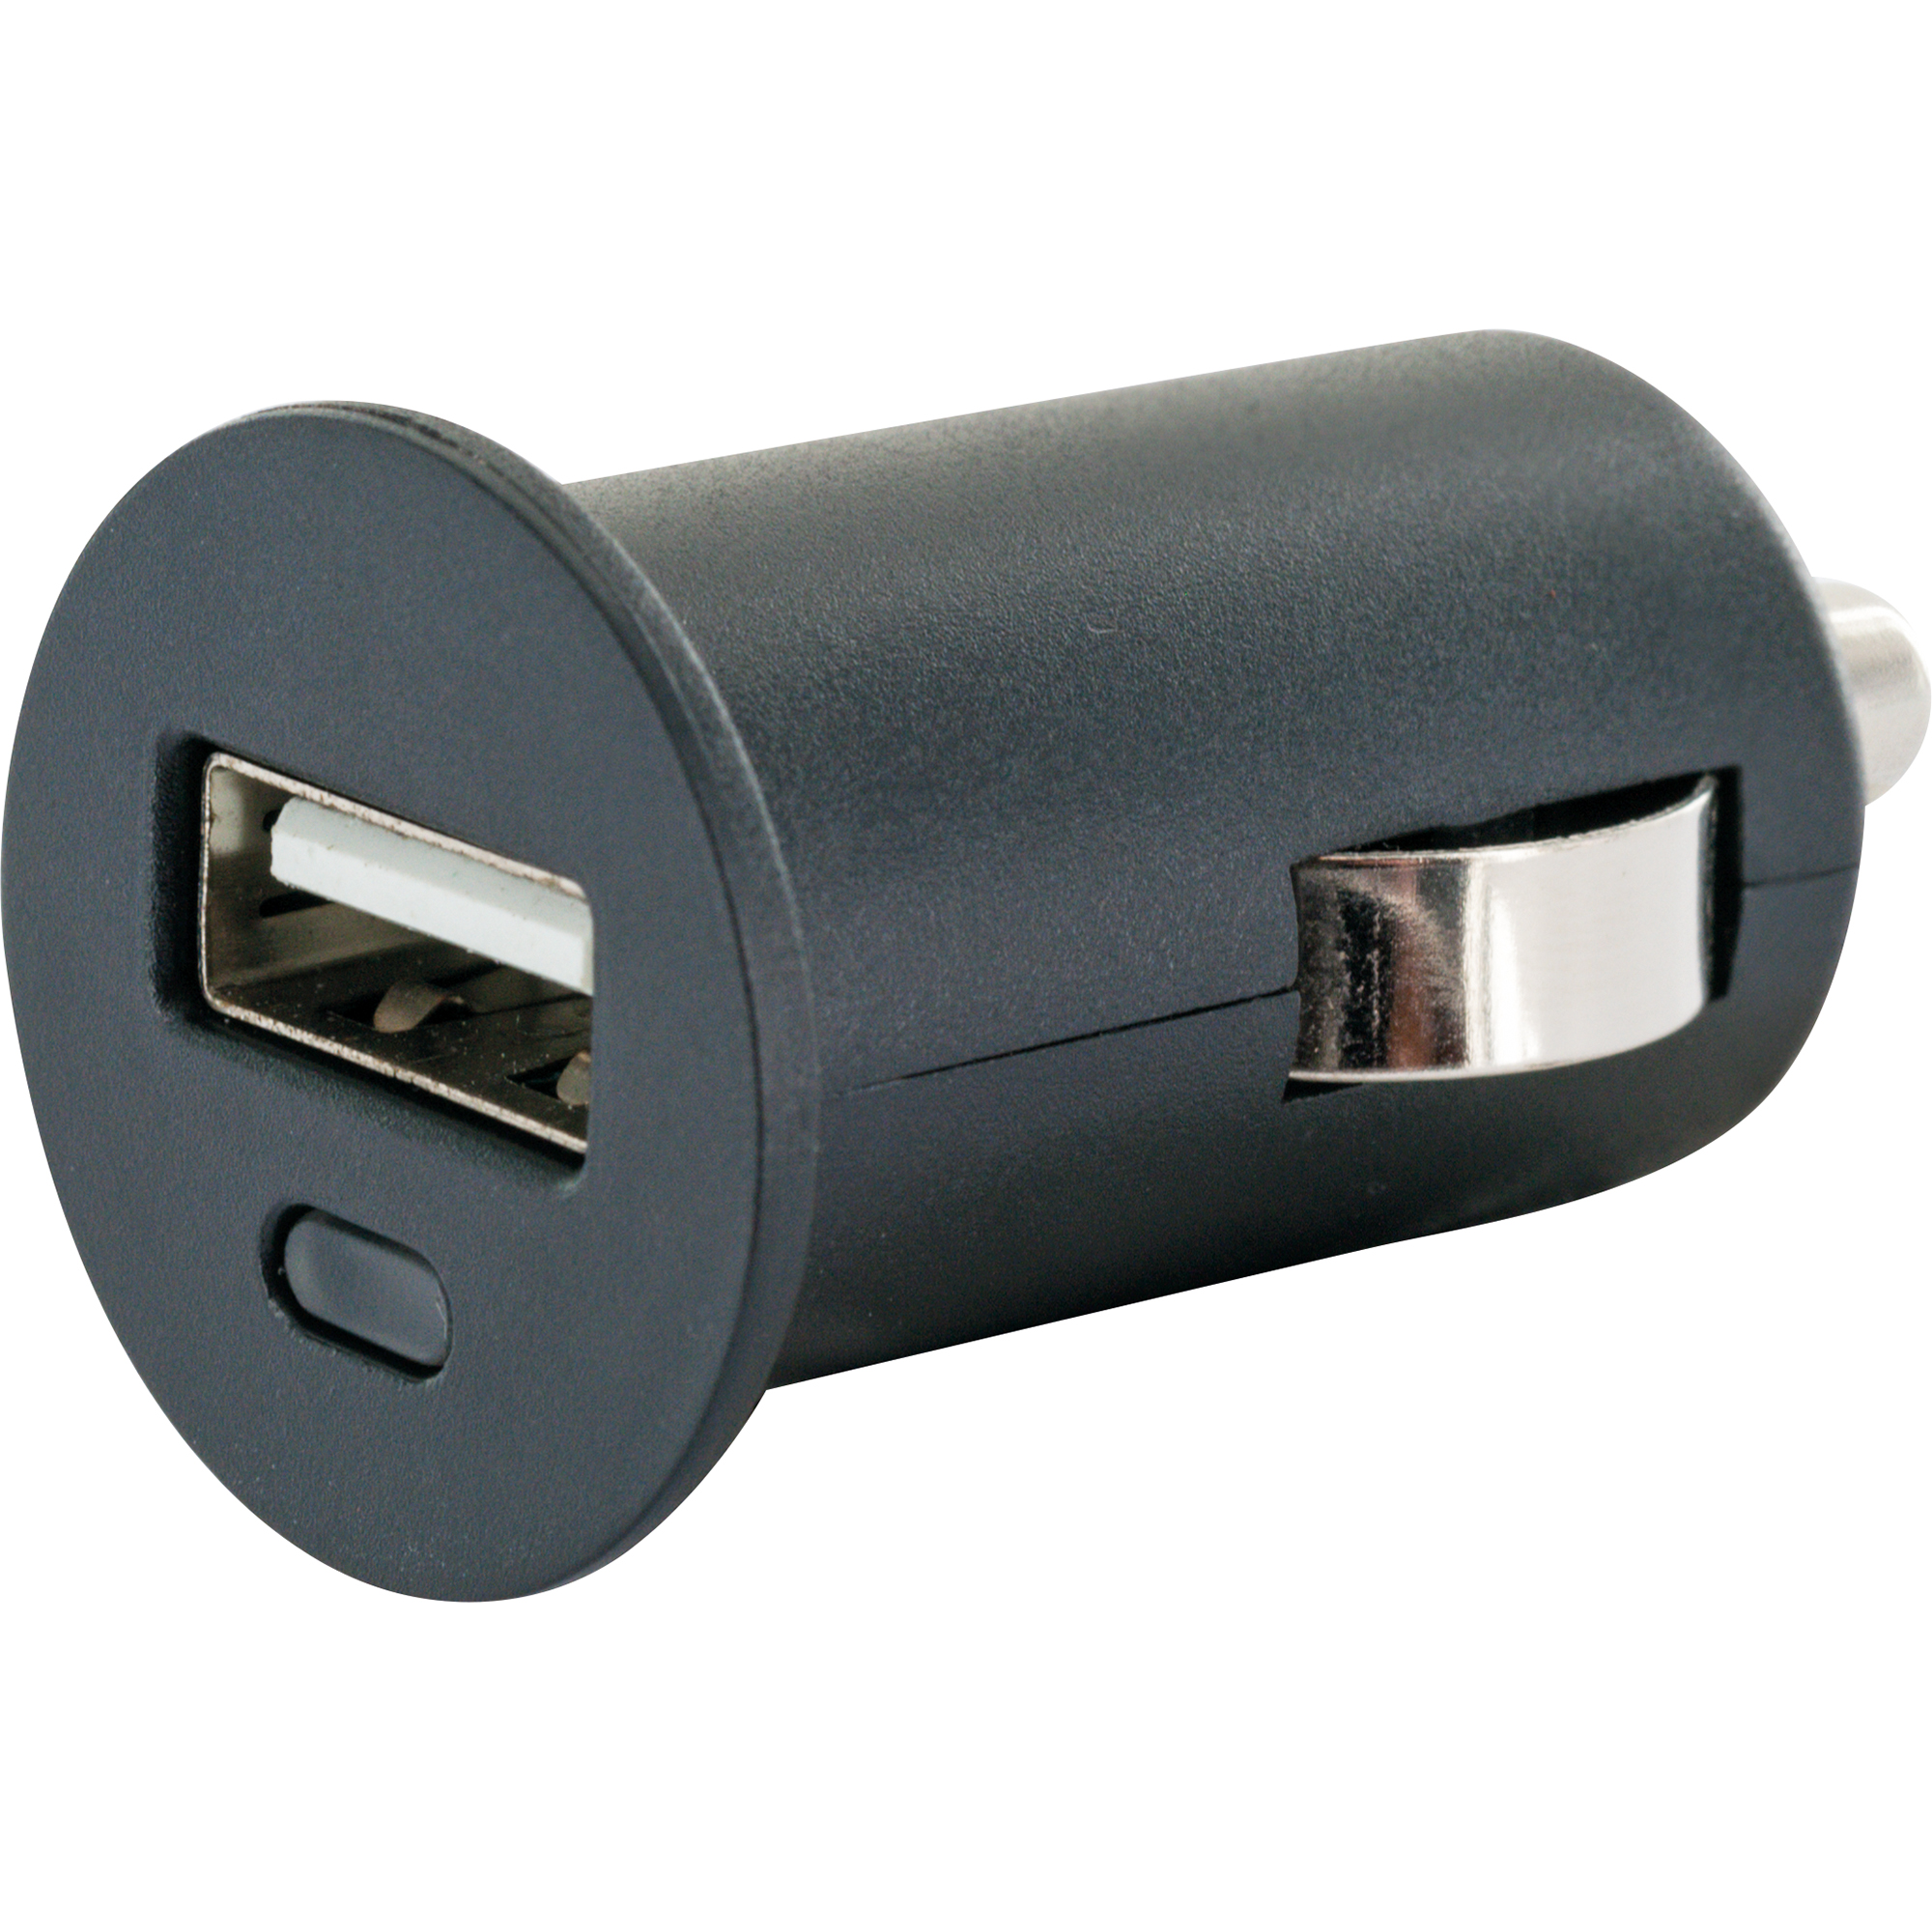 Lade-Set 'Smart' USB C, 12 V & 230 V + product picture